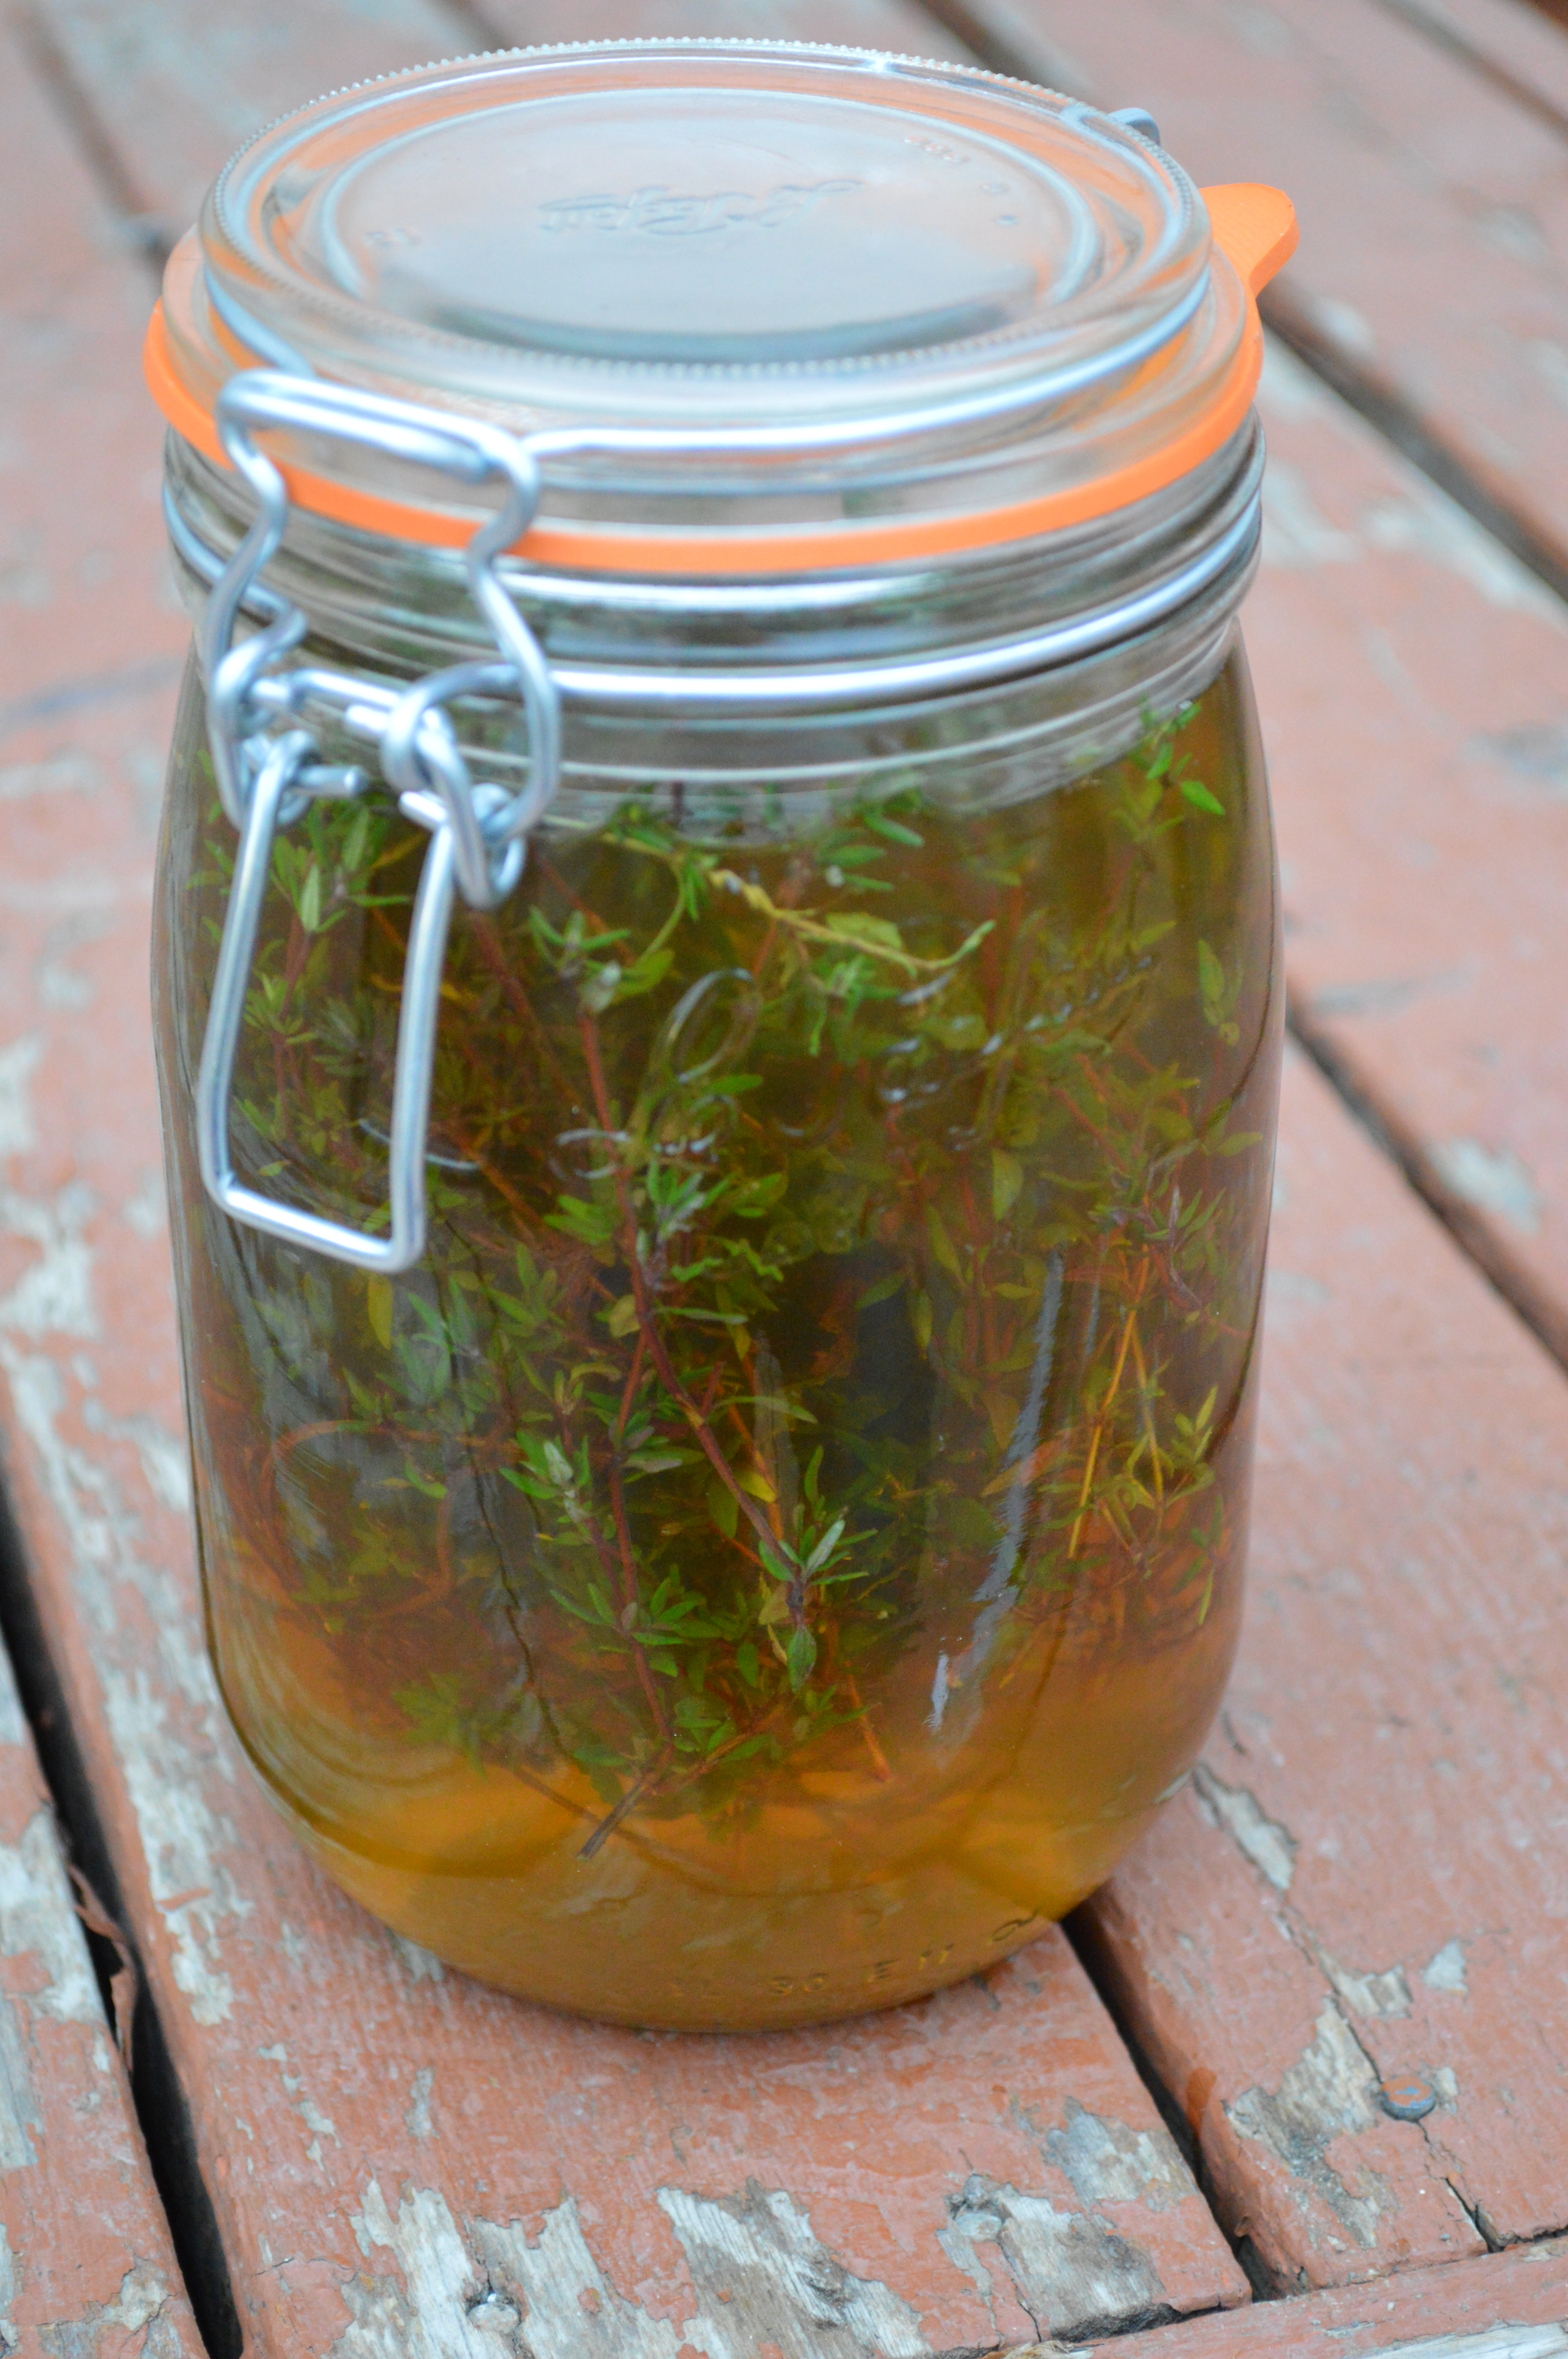 A jar of thyme vinegar.